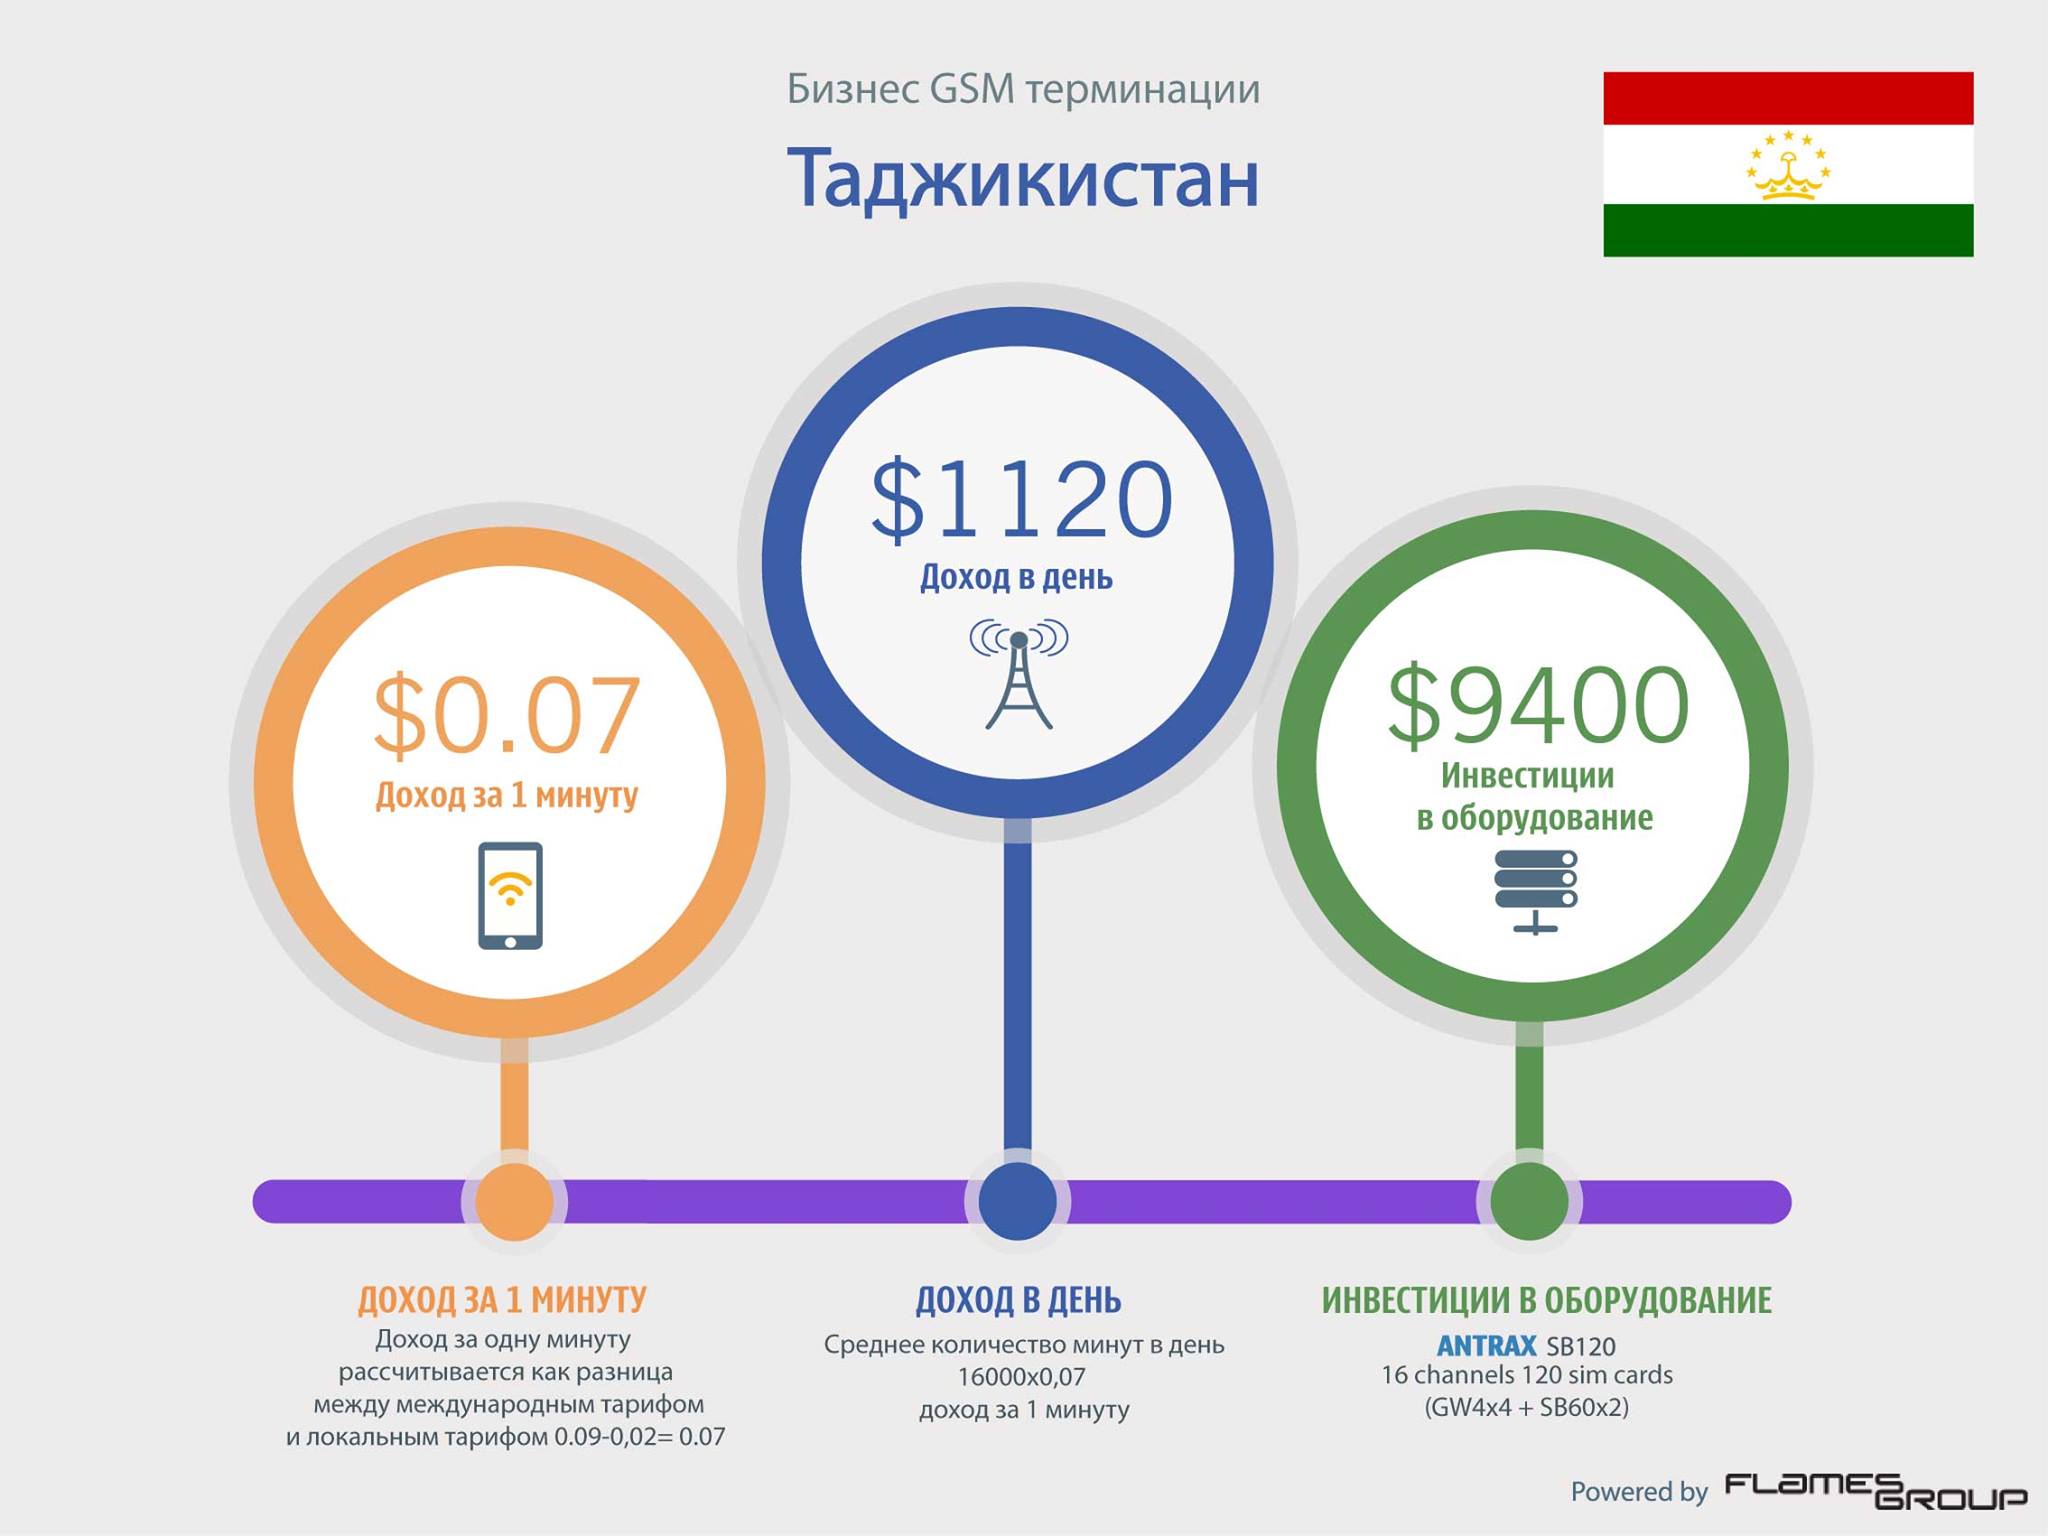 GSM терминация в Таджикистане - Инфографика ANTRAX